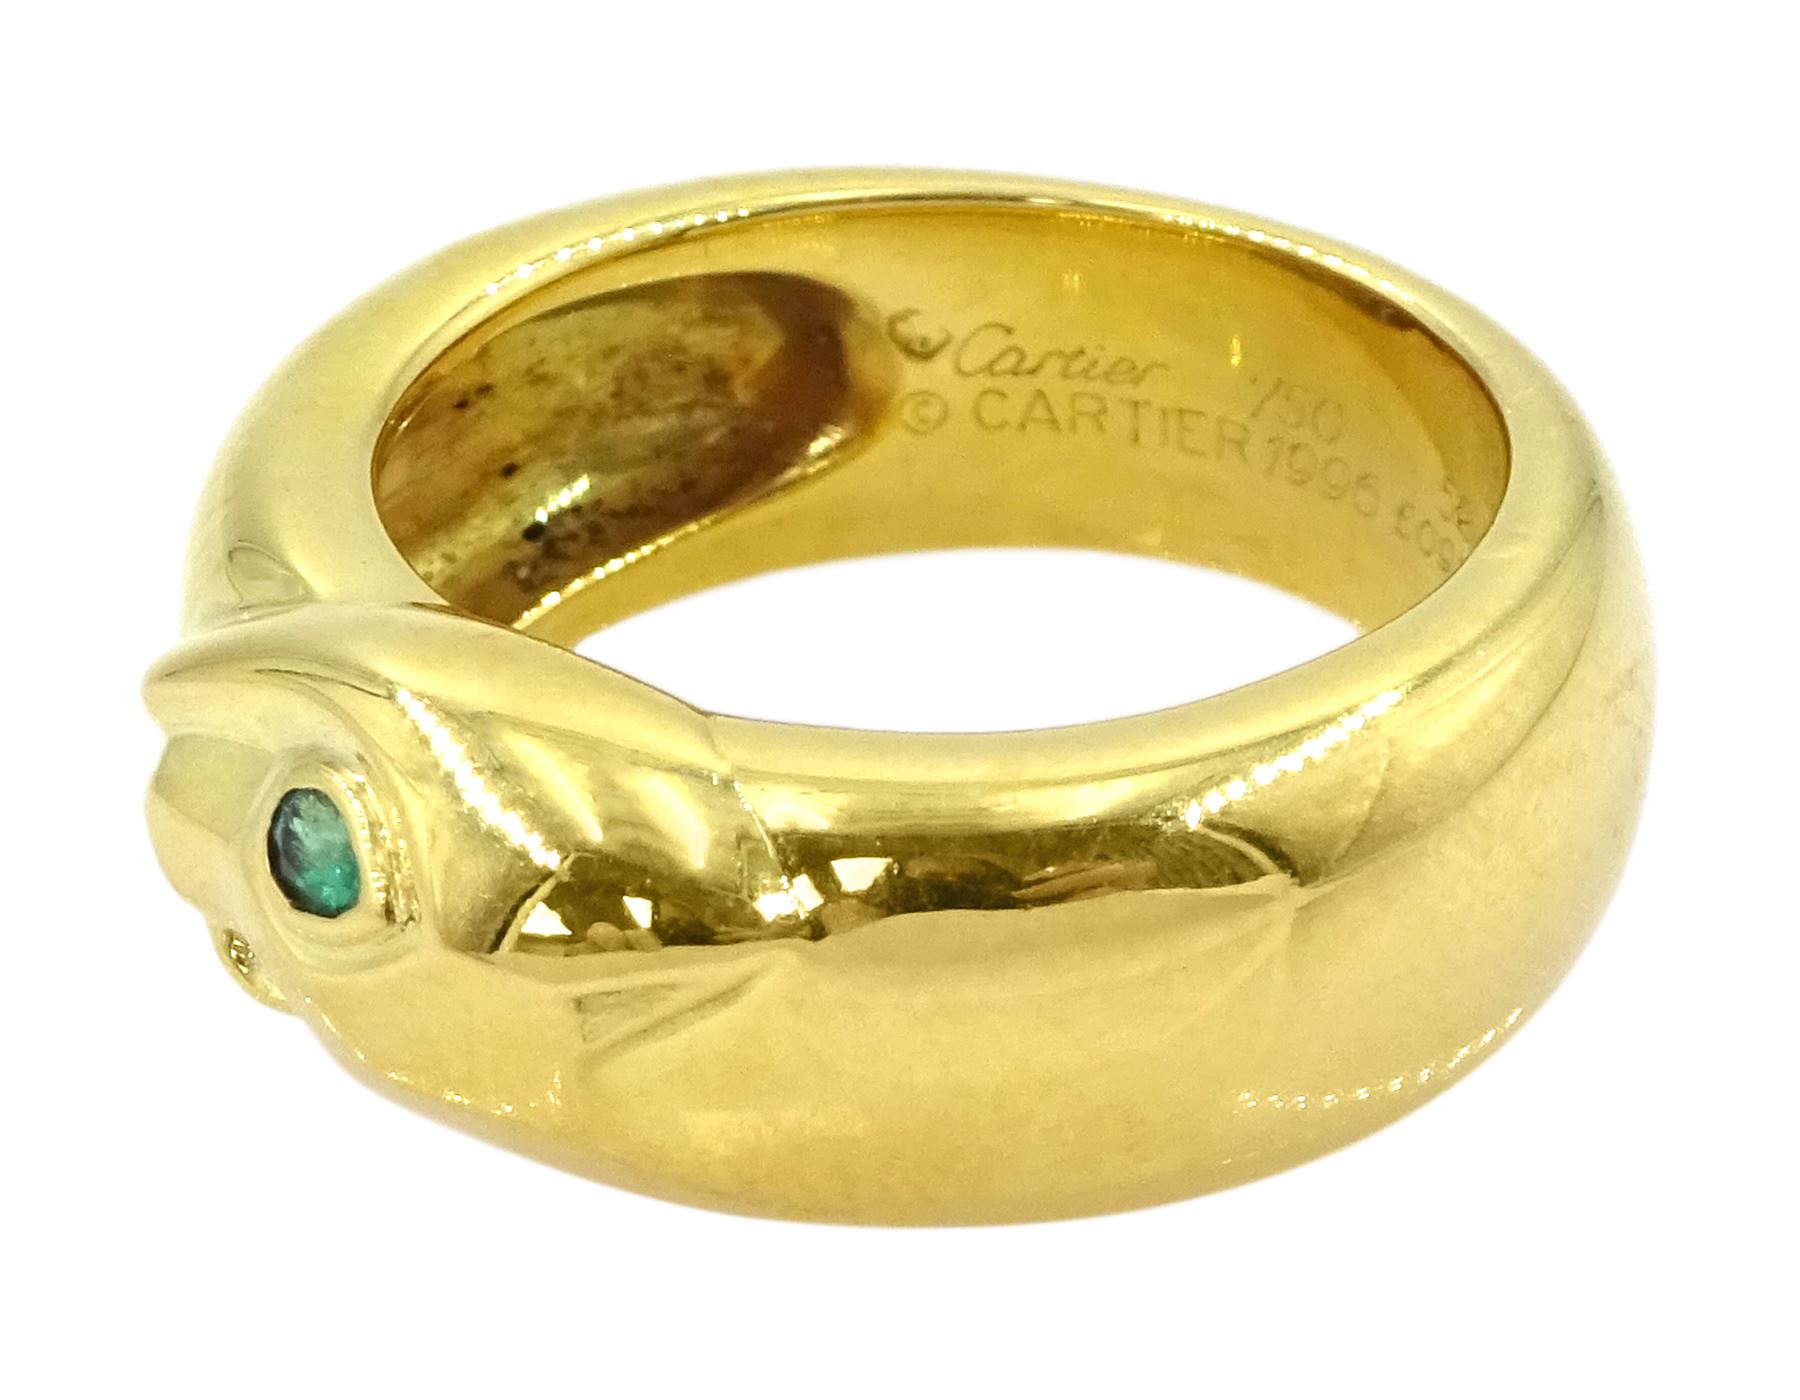 Cartier Panthere 18ct gold tsavorite garnet ring - Image 6 of 10